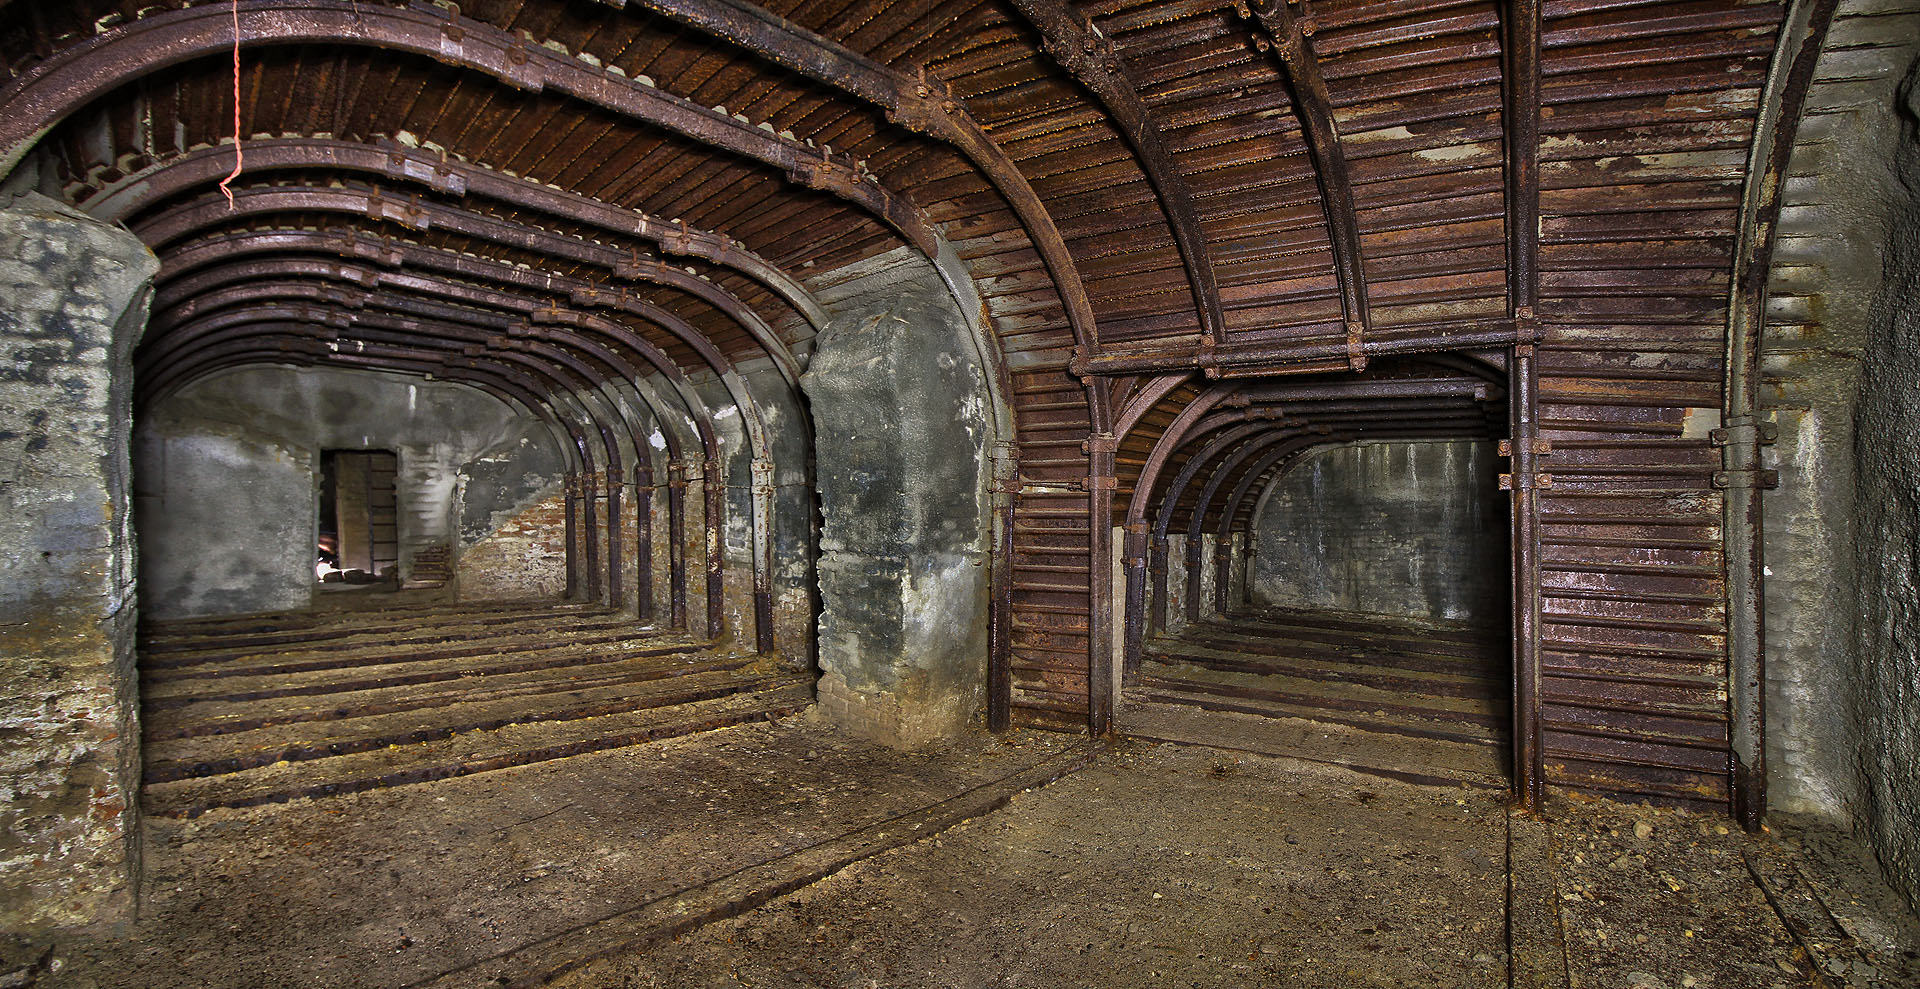 Často jsou podzemní prostory tím jediným, co zbylo po zbouraných stavbách. Sklepení na snímku je pozůstatkem po celé zmizelé ulici U svaté Anny (Annagrund).